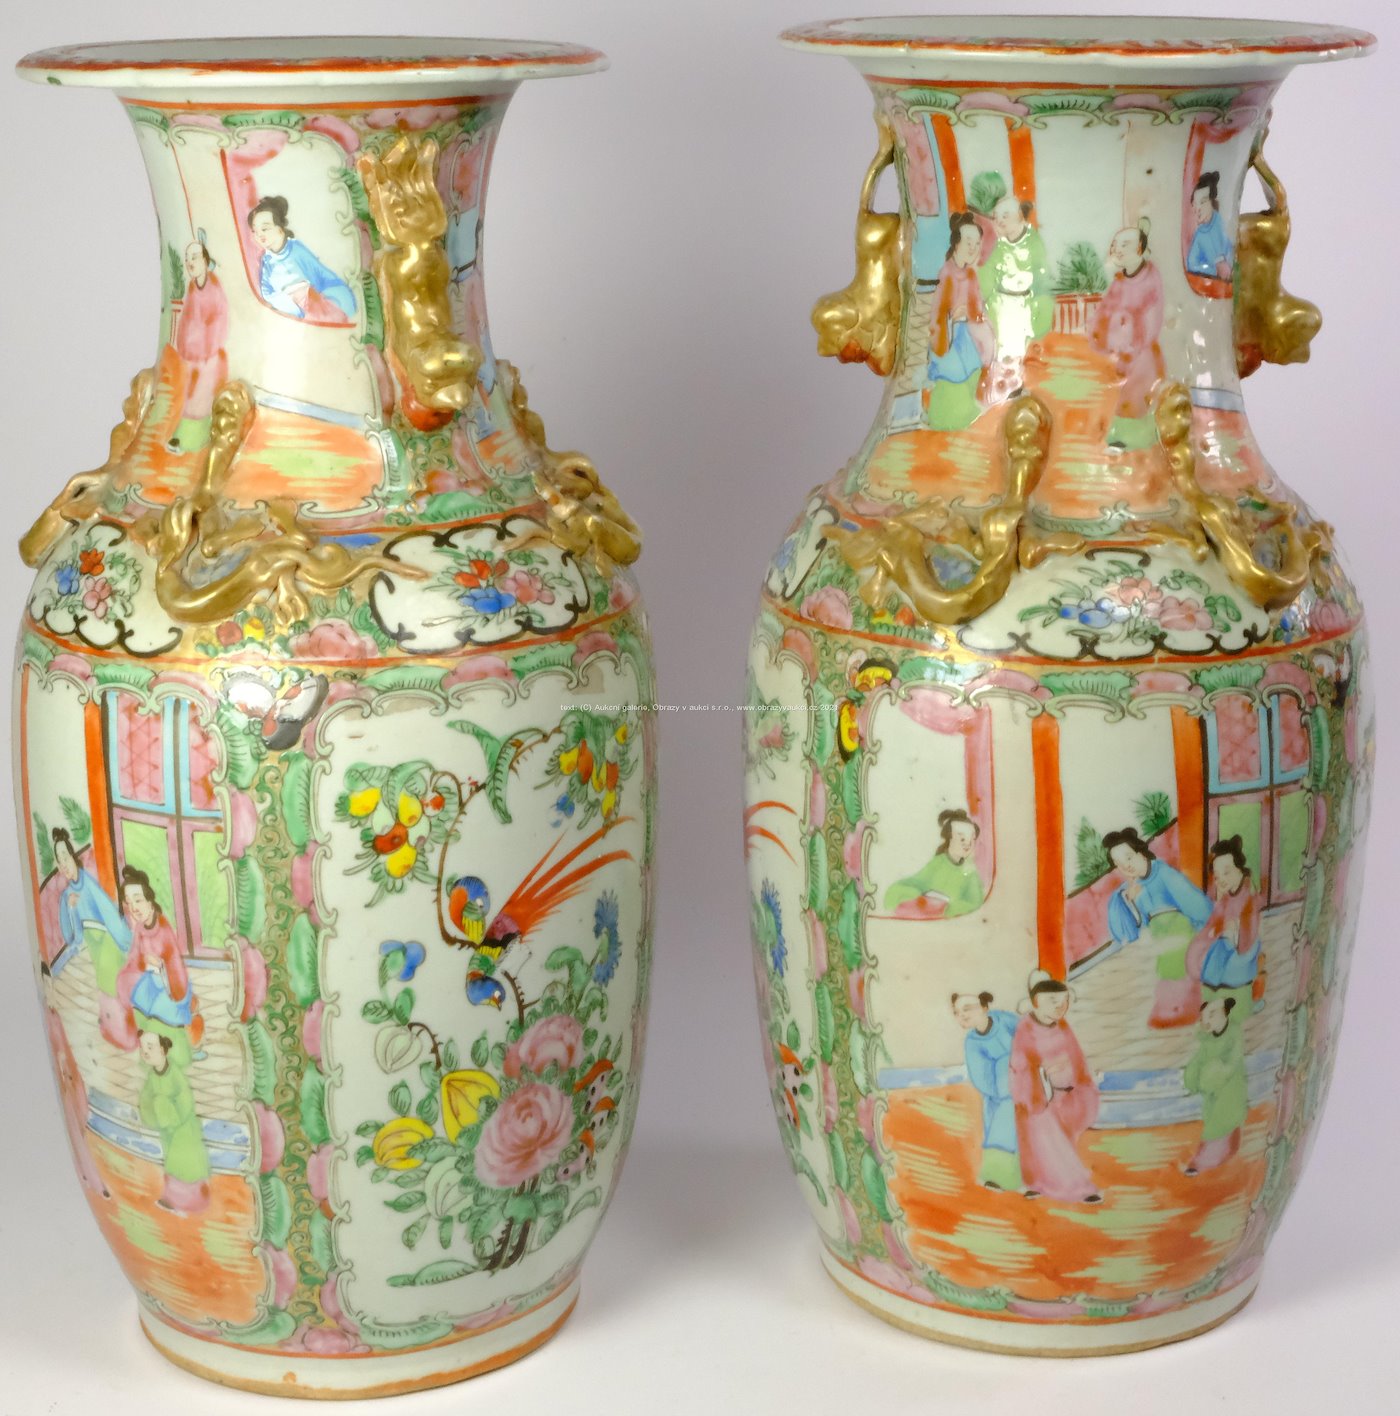 Čína, Kanton. Přelom 19. a 20. století - Párové vázy